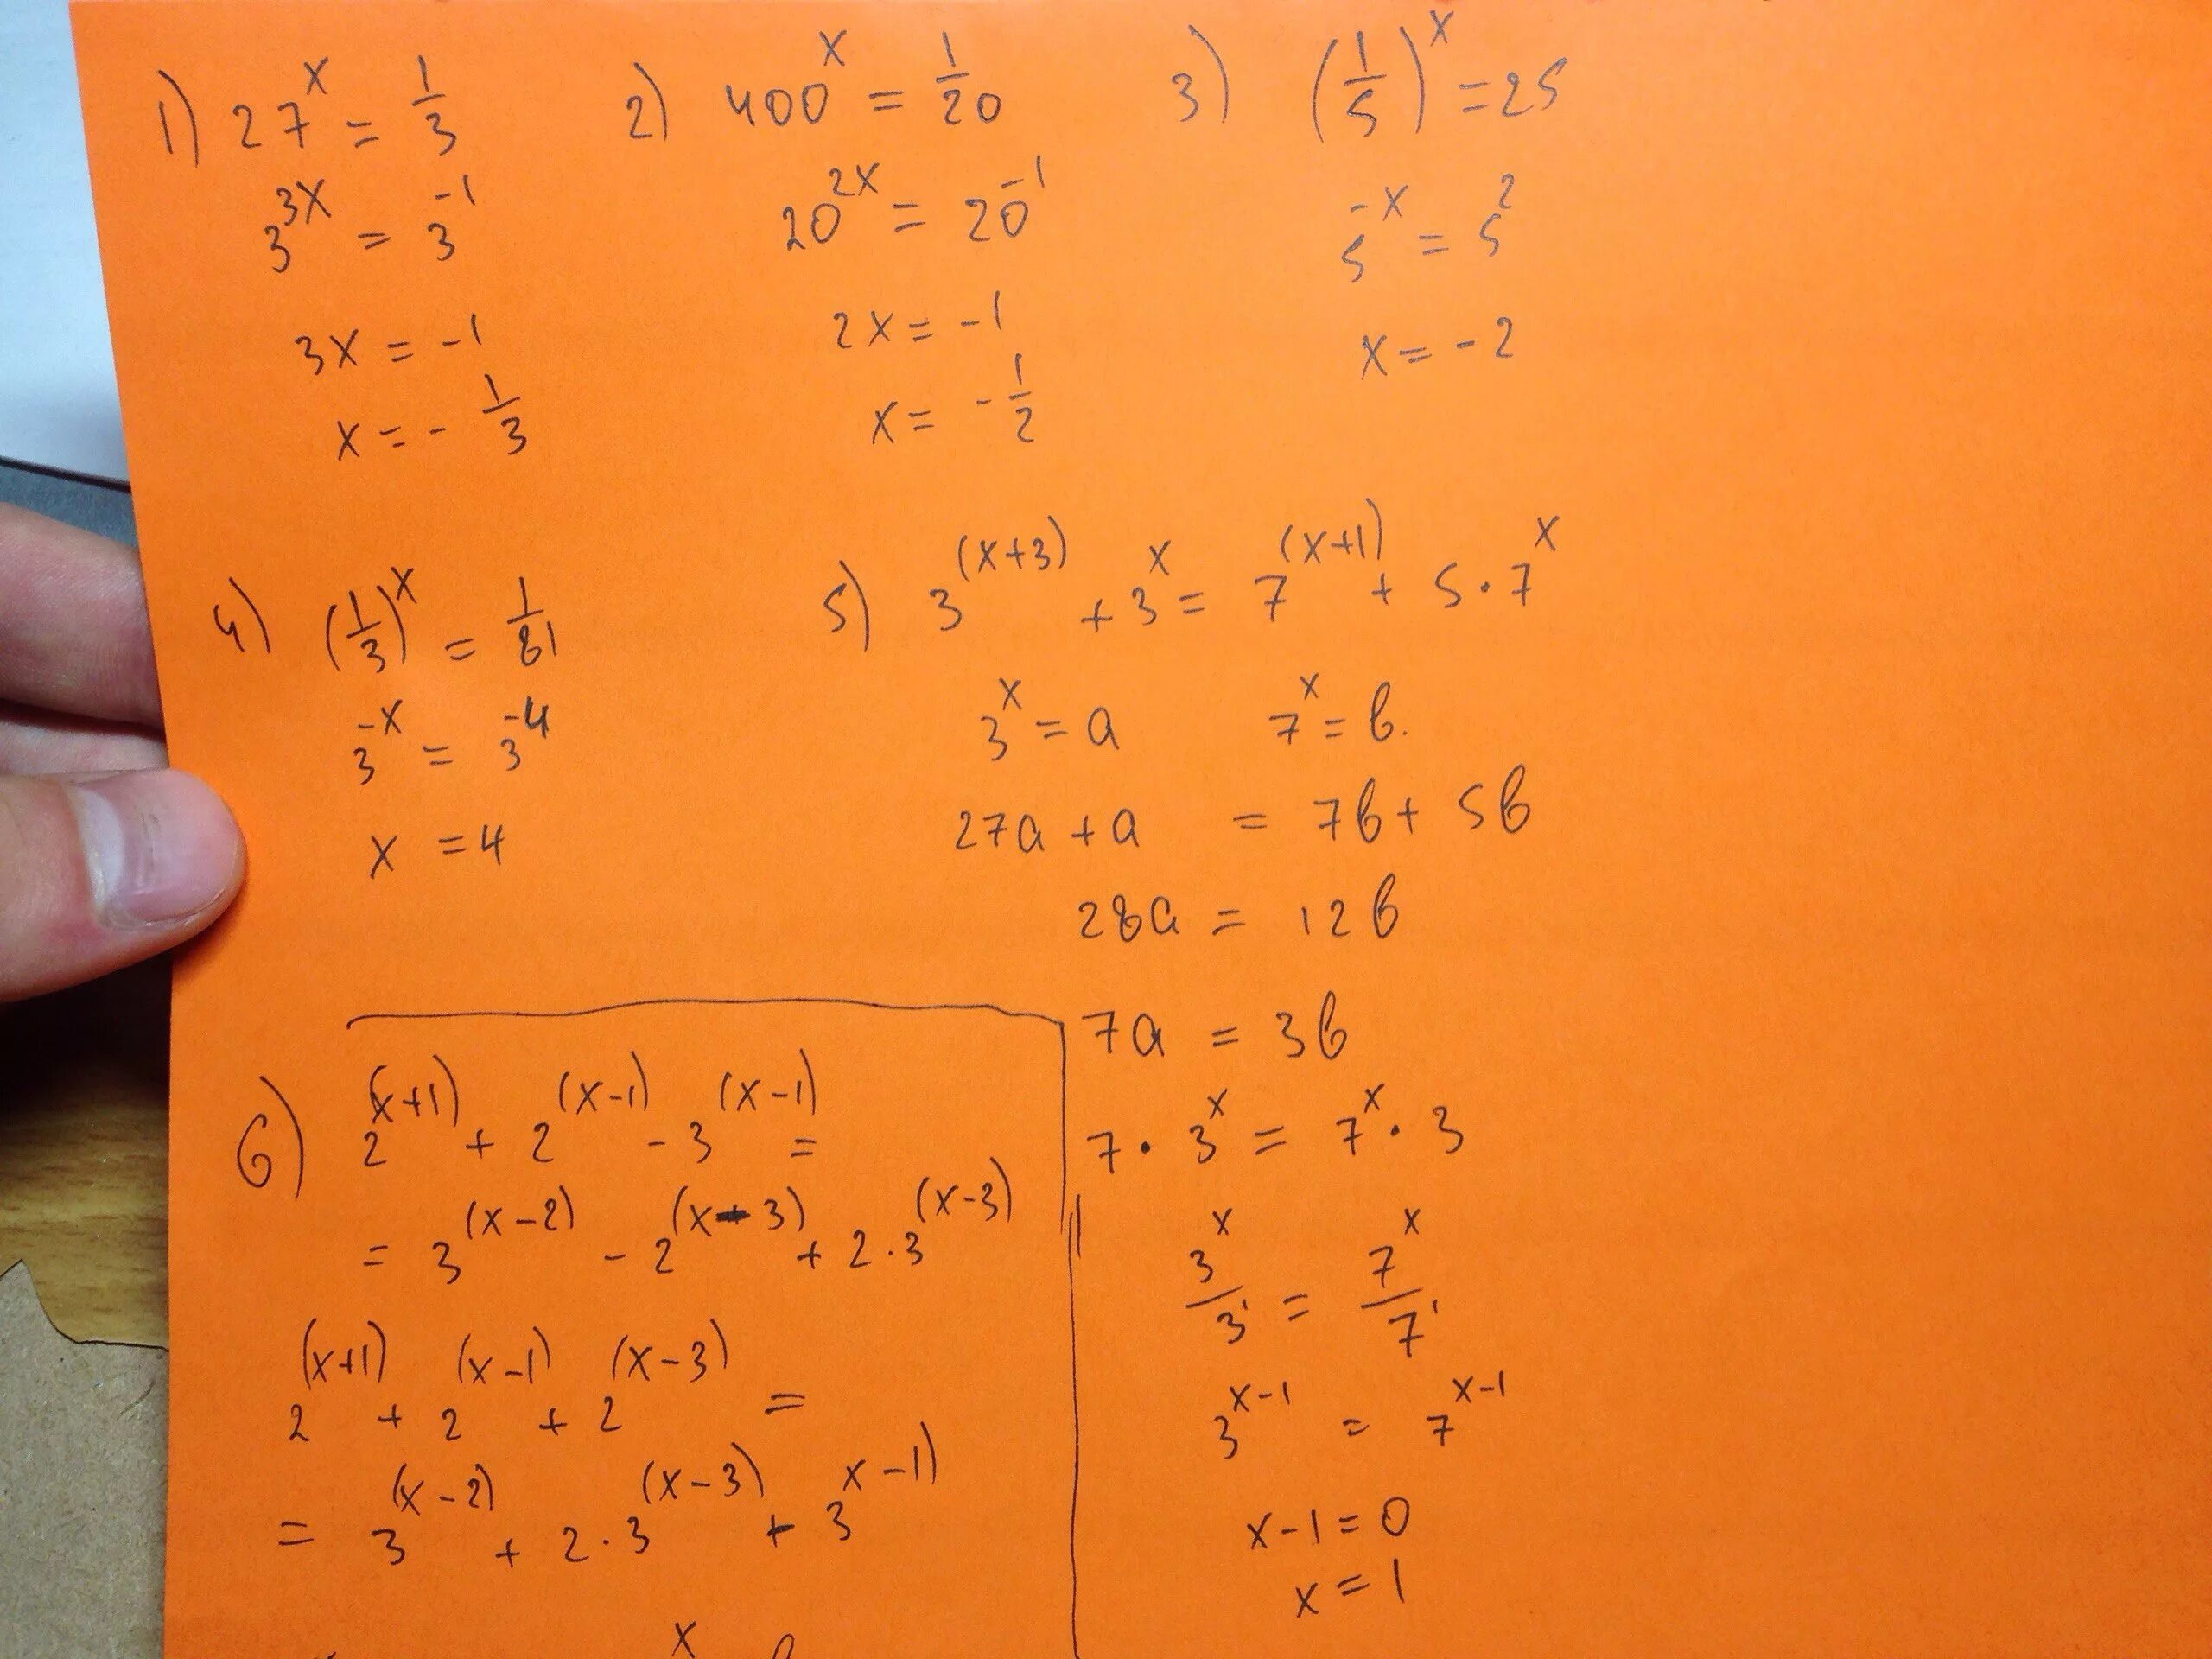 81 1 7 27 1 7. (1/3)^X <1/81. 27x 1/3. 81x+1 =3. 27^1-Х=1/81.